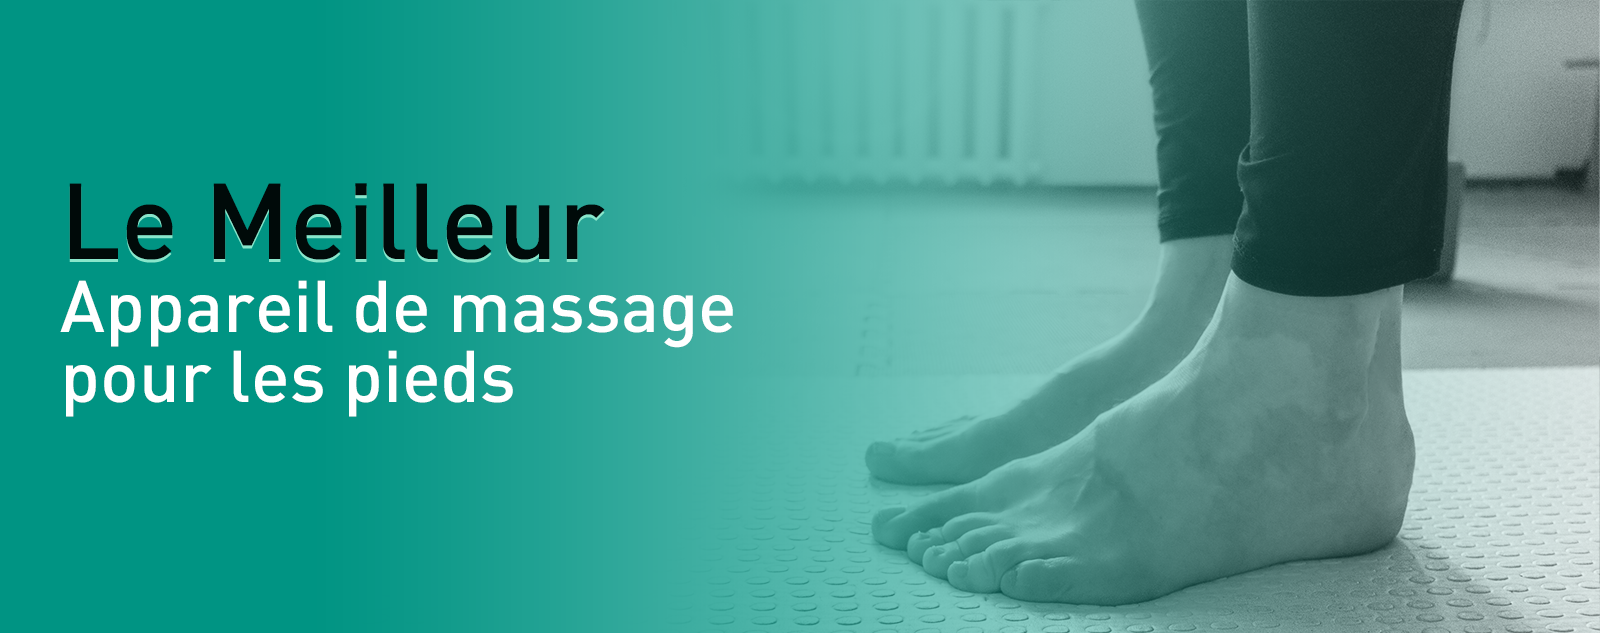 Meilleur appareil de massage pour les pieds